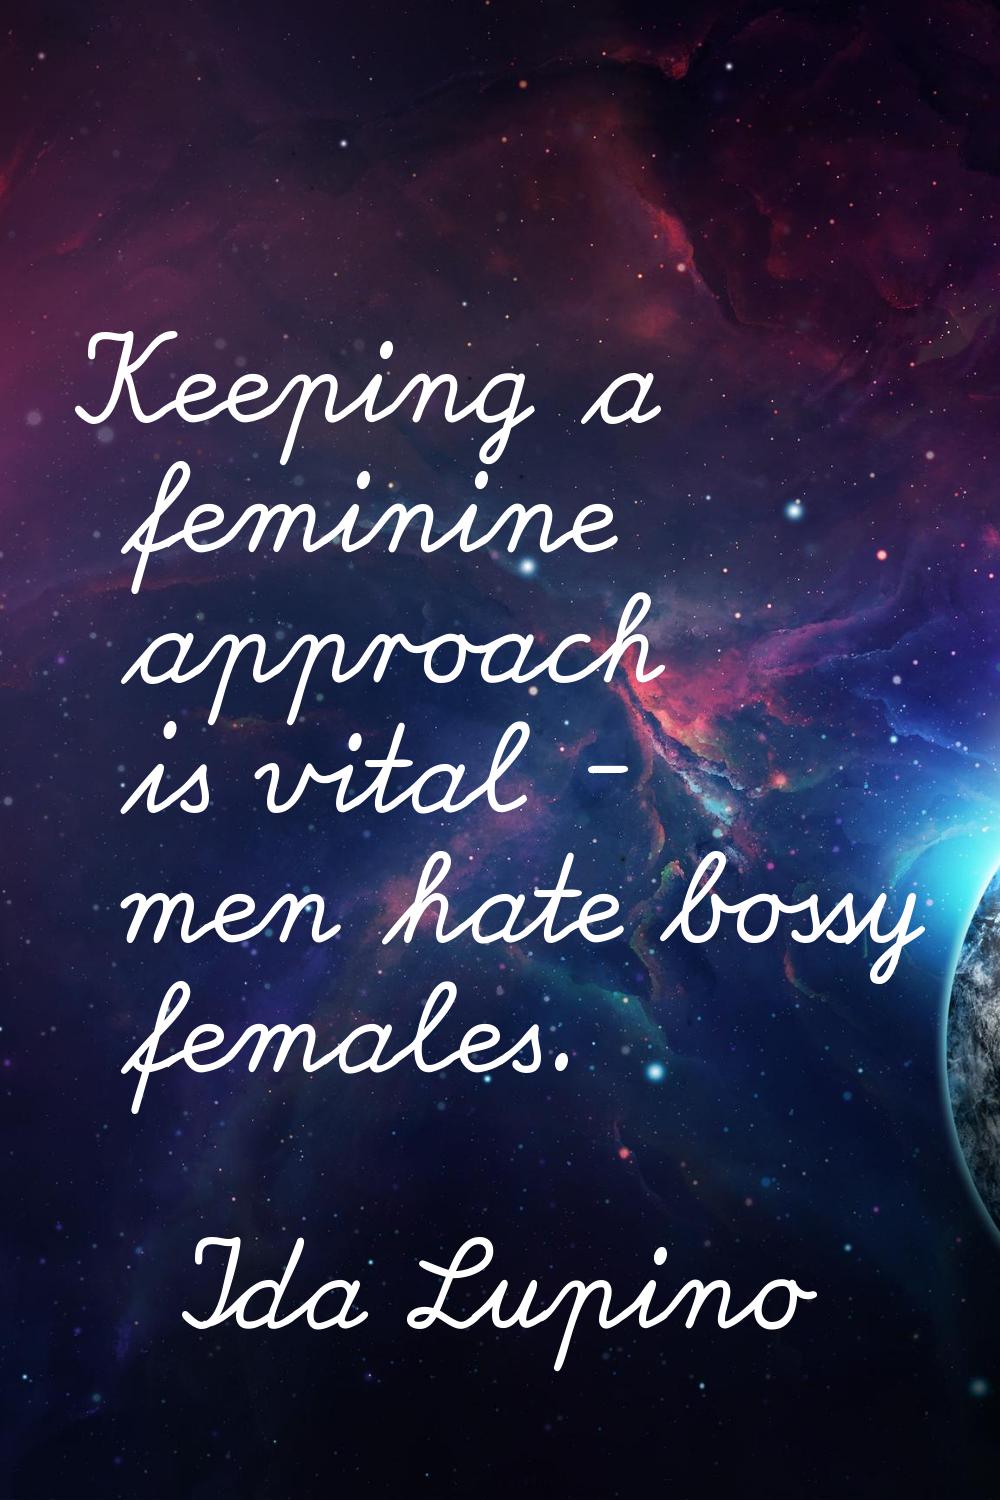 Keeping a feminine approach is vital - men hate bossy females.